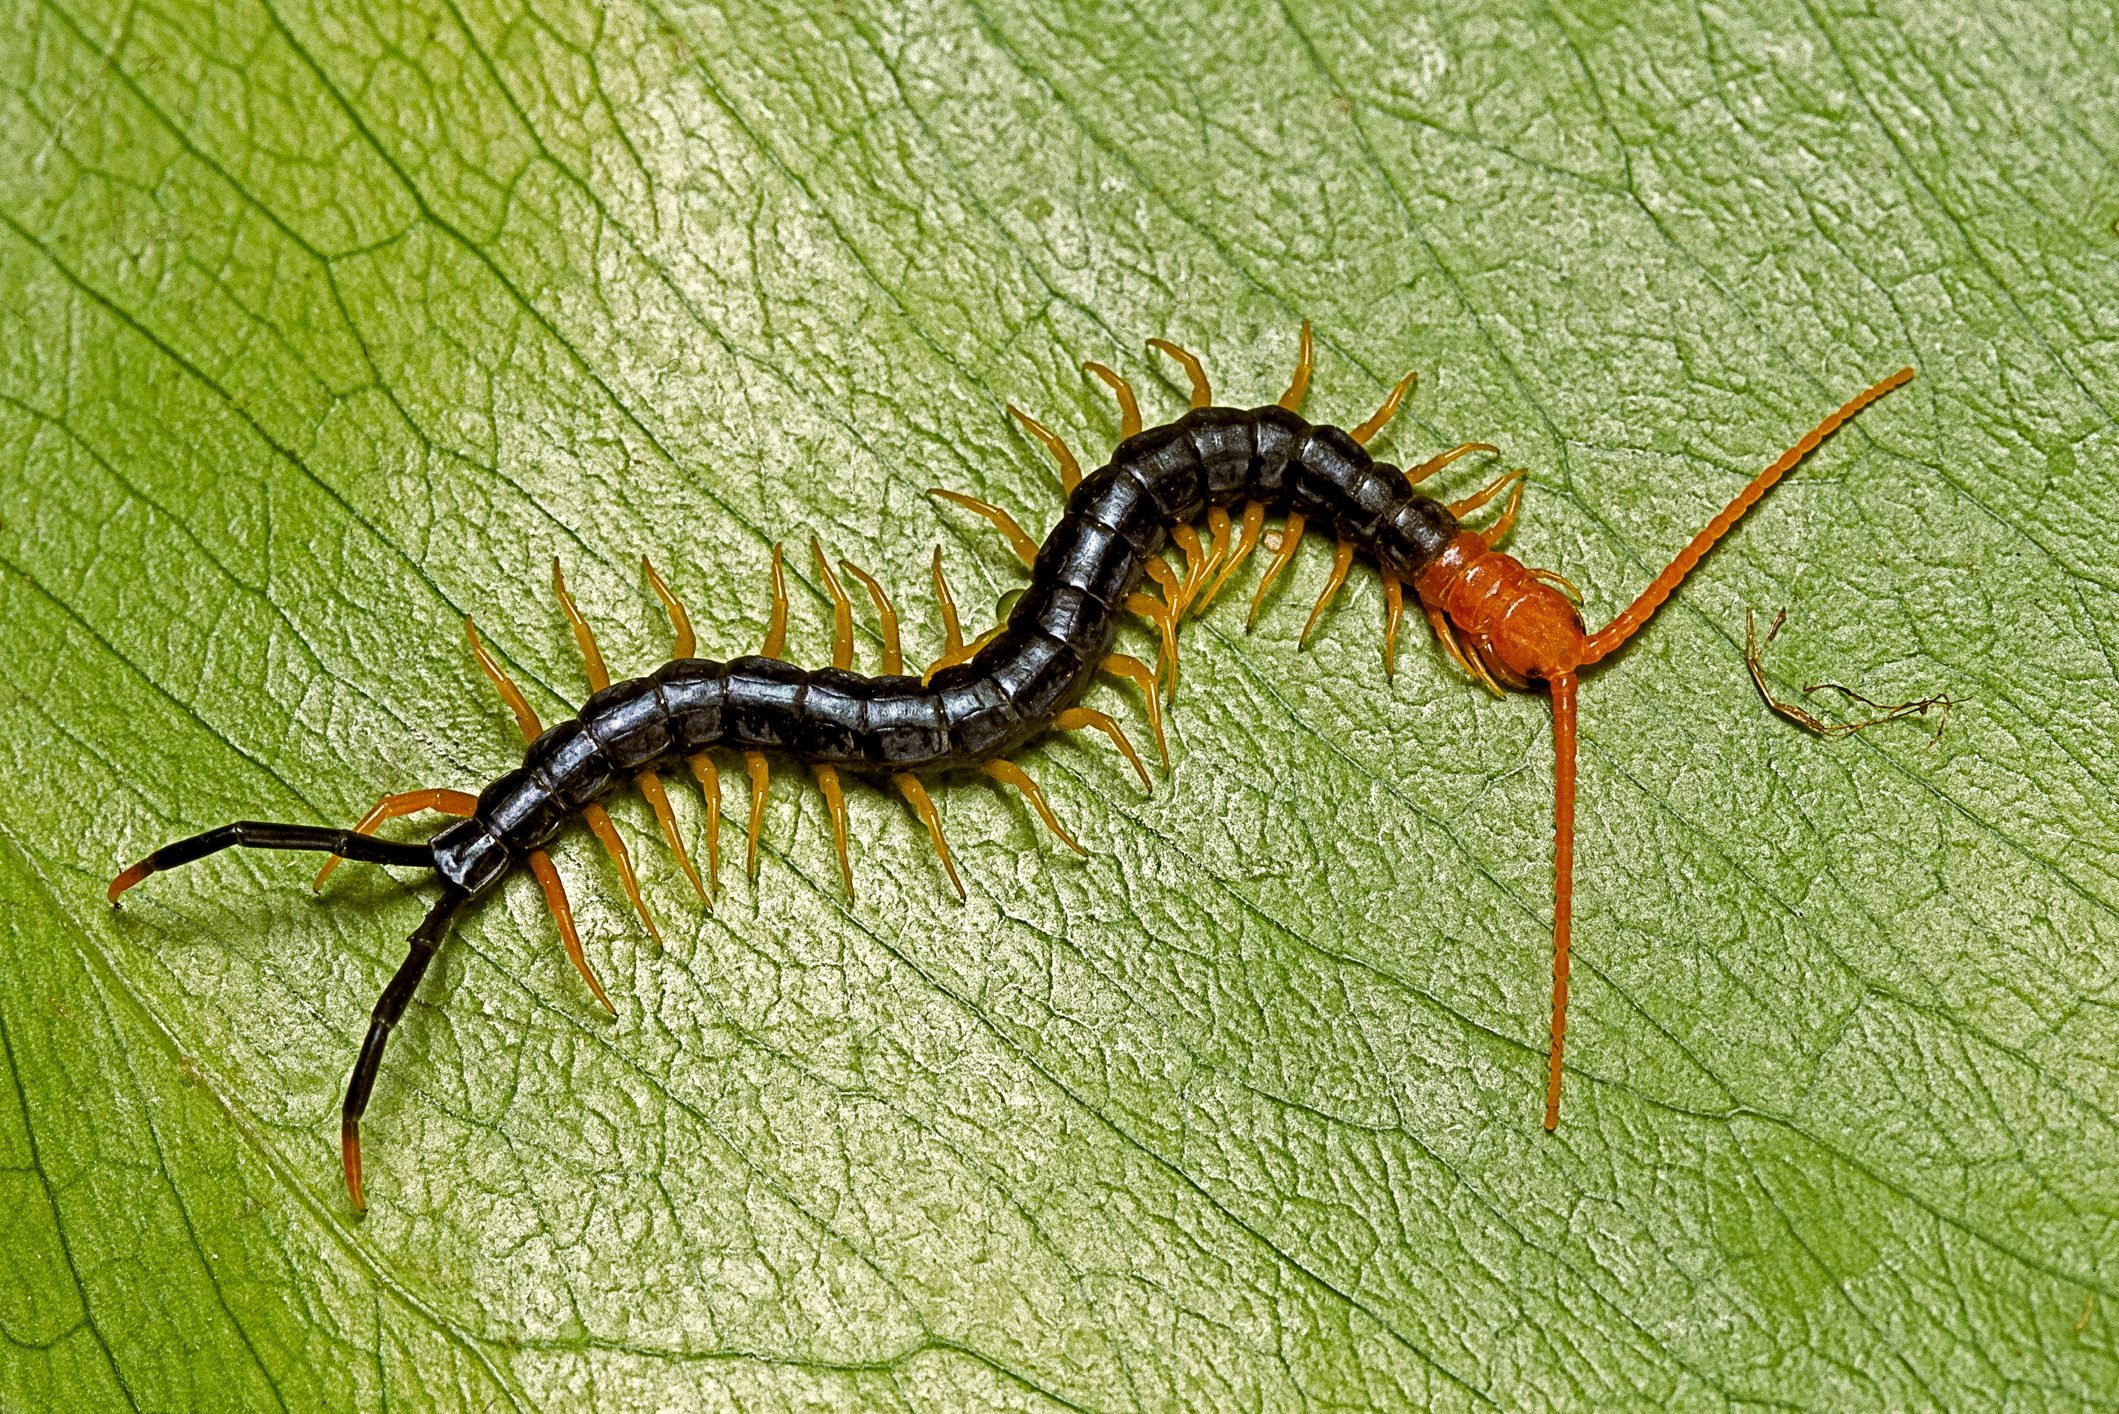 Do Centipedes Bite?